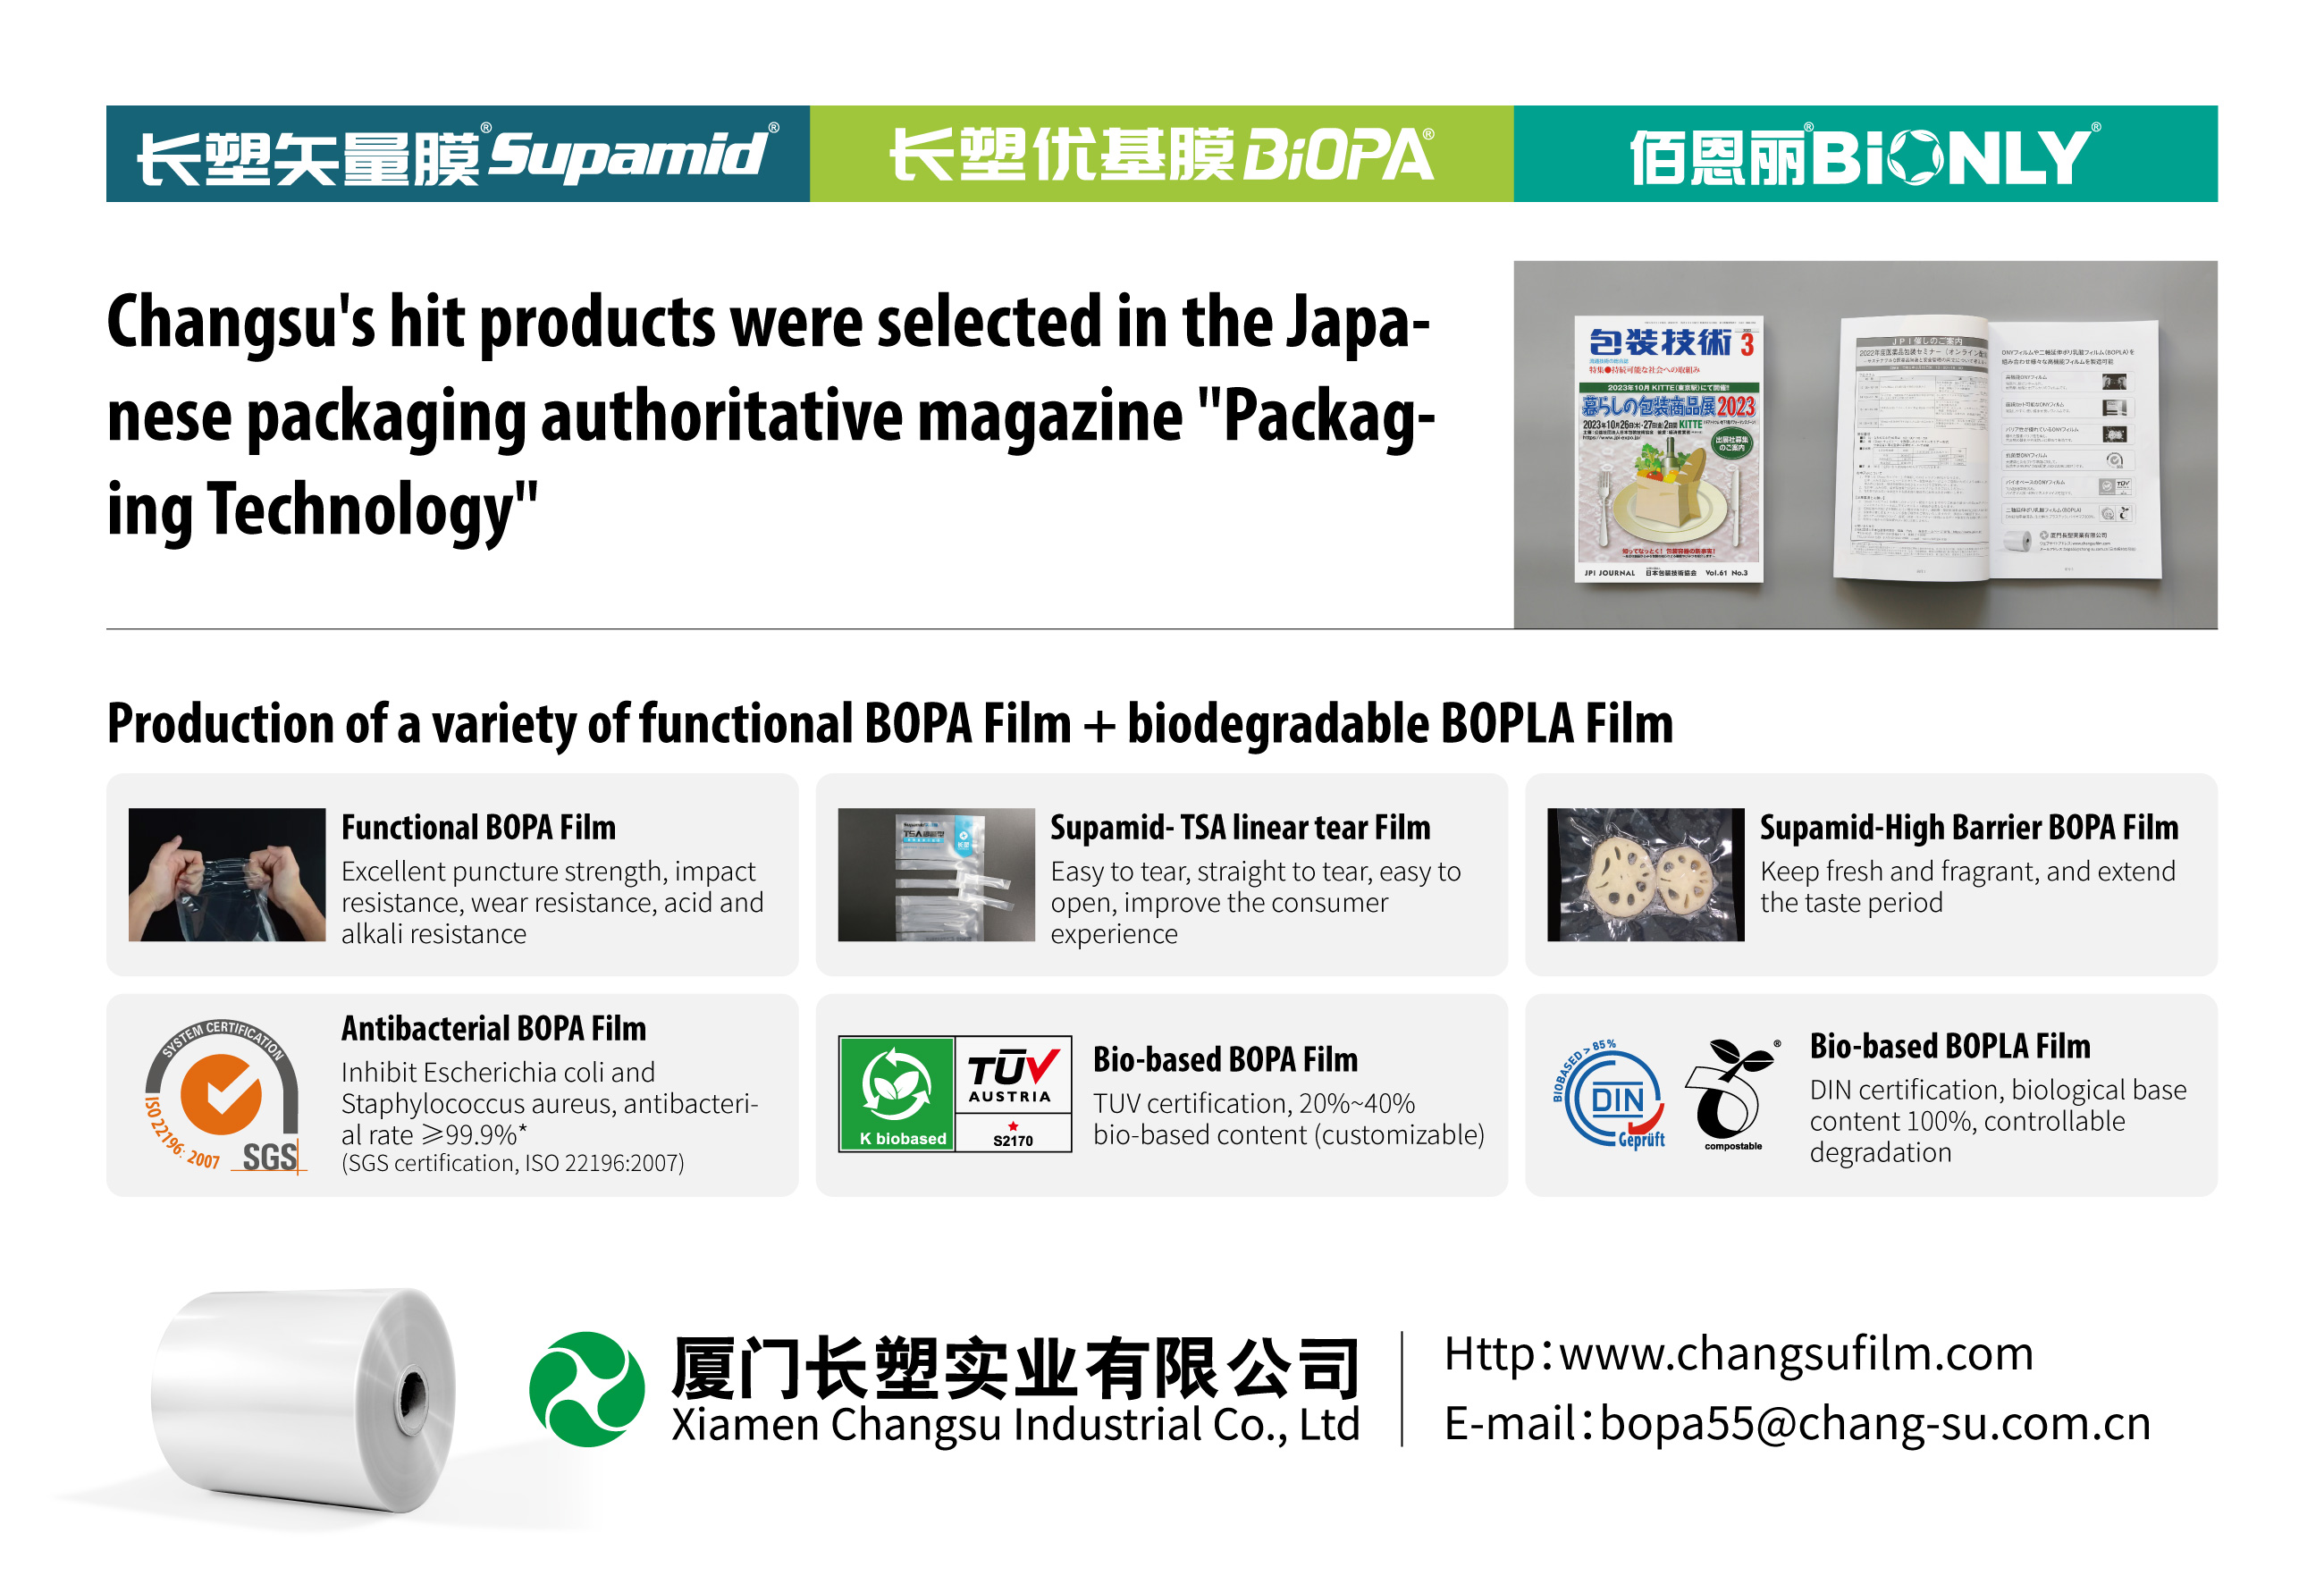 चाङ्सुका हिट उत्पादनहरू जापानी प्याकेजिङ आधिकारिक पत्रिका "प्याकेजिङ टेक्नोलोजी" मा चयन गरिएको थियो।